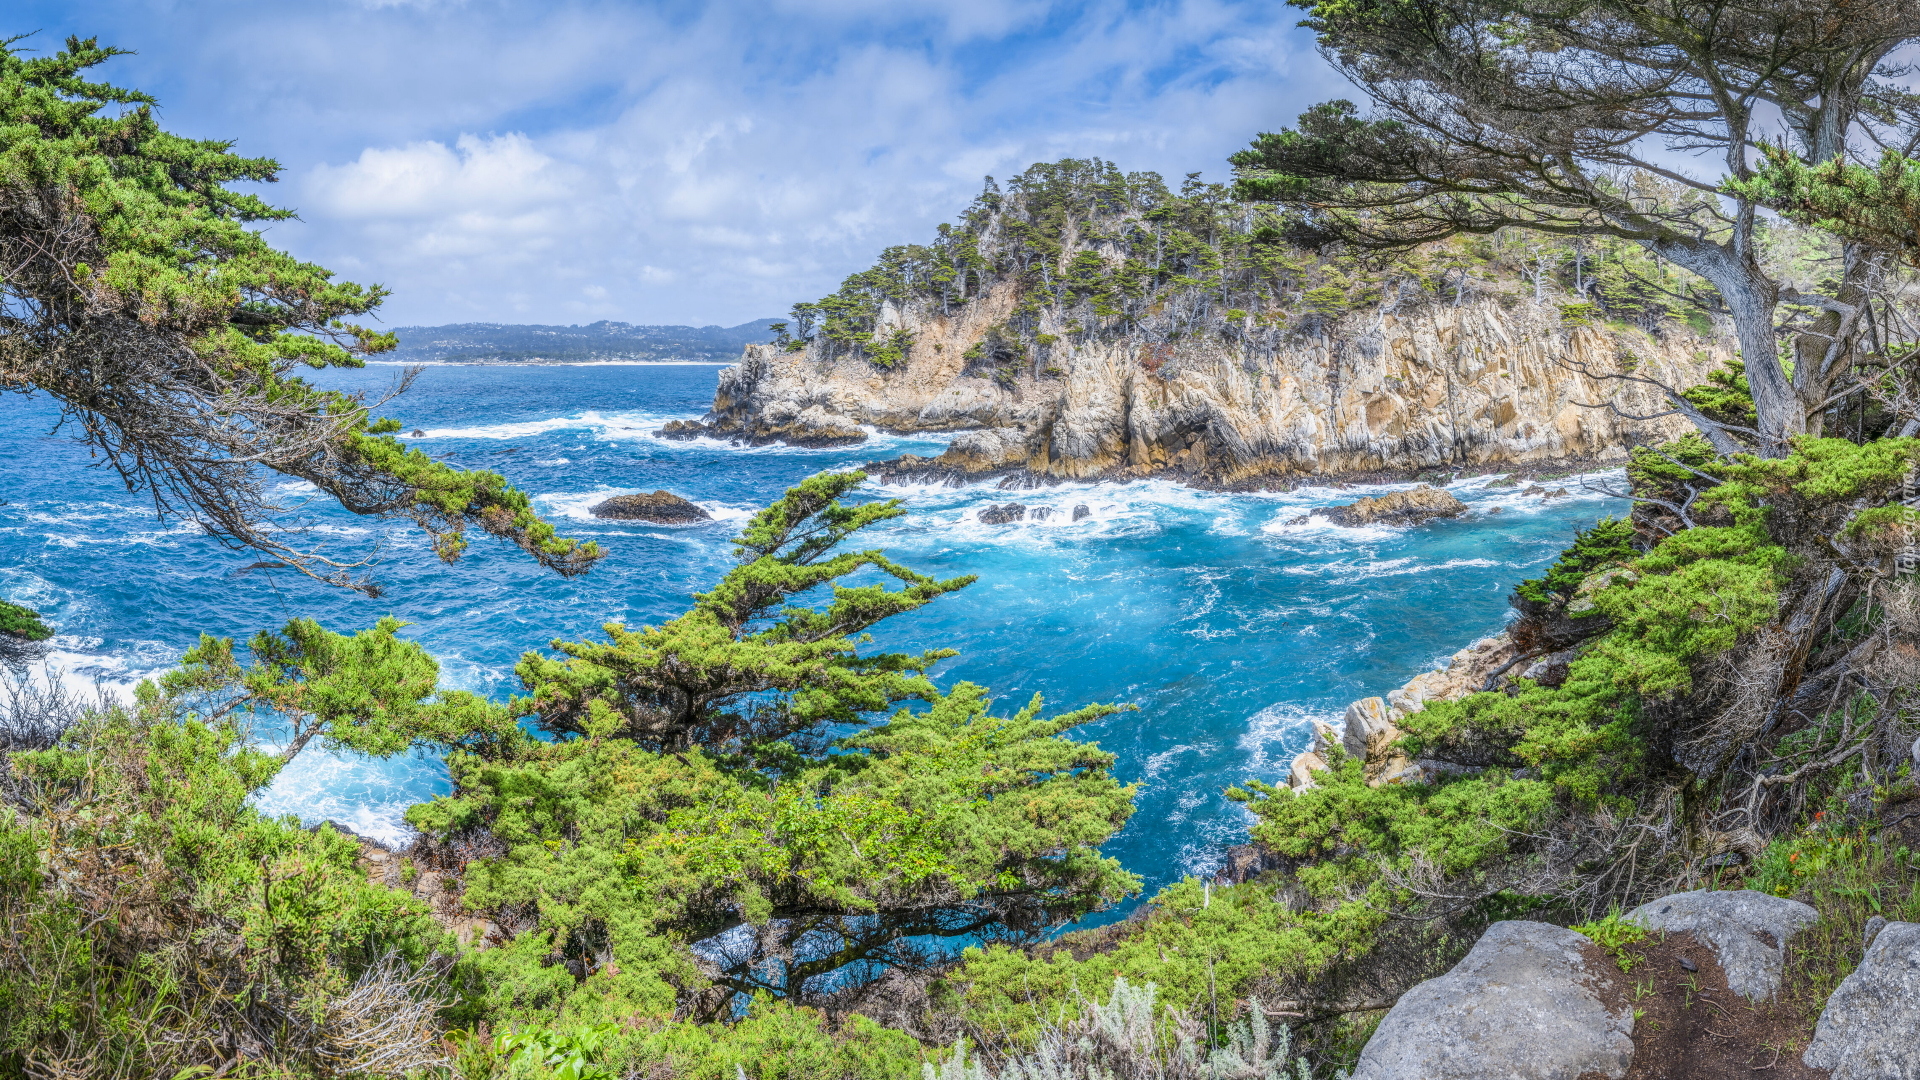 Morze, Skały, Drzewa, Rośliny, Rezerwat przyrody, Point Lobos, Kalifornia, Stany Zjednoczone